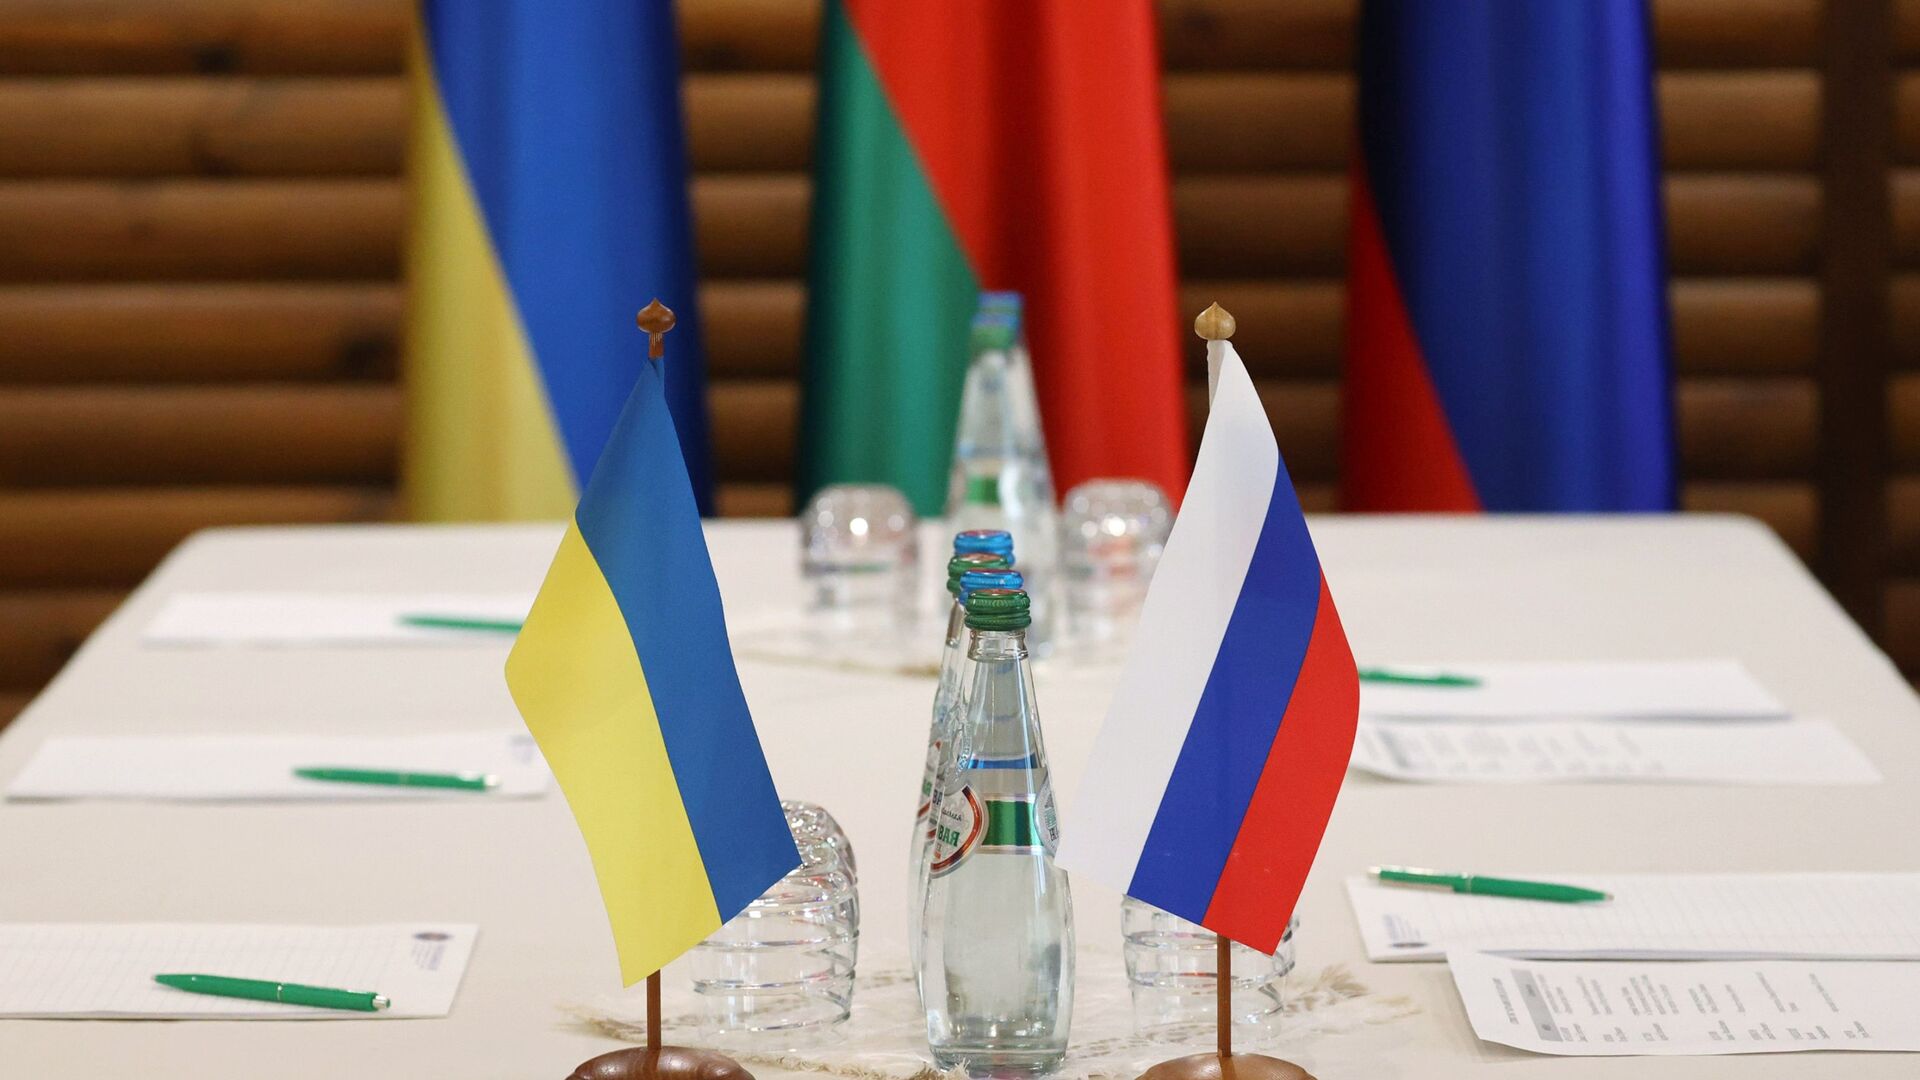 Флажки на столе, за которым пройдут российско-украинские переговоры - Sputnik Таджикистан, 1920, 14.03.2022